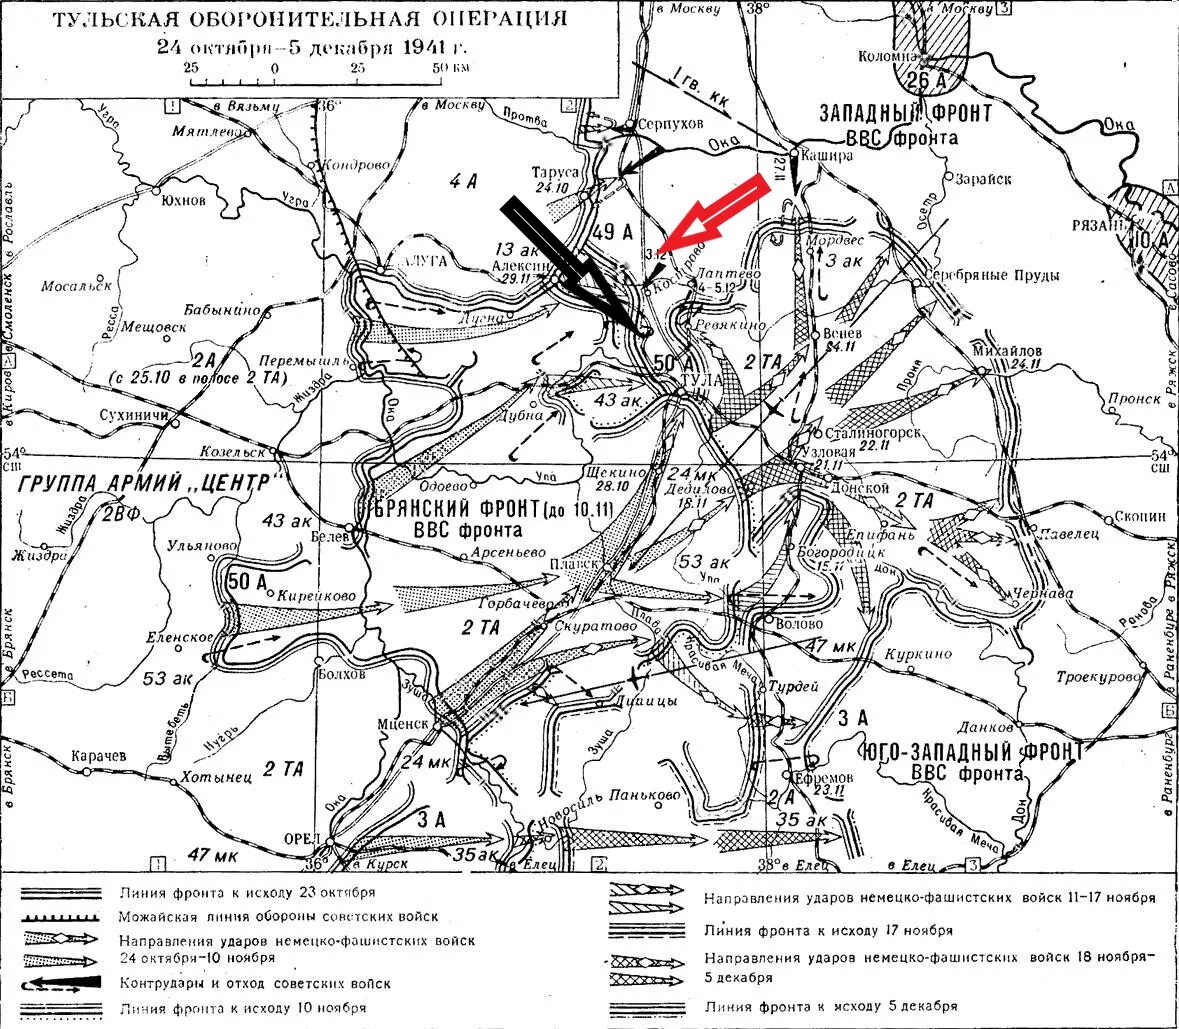 5 октября 1941. Тульская оборонительная операция 1941 года карта боевых. Тульская оборонительная операция 1941 года карта. Тульская оборонительная операция 24 октября-5 декабря 1941. Оборона Тулы в 1941 году карта.